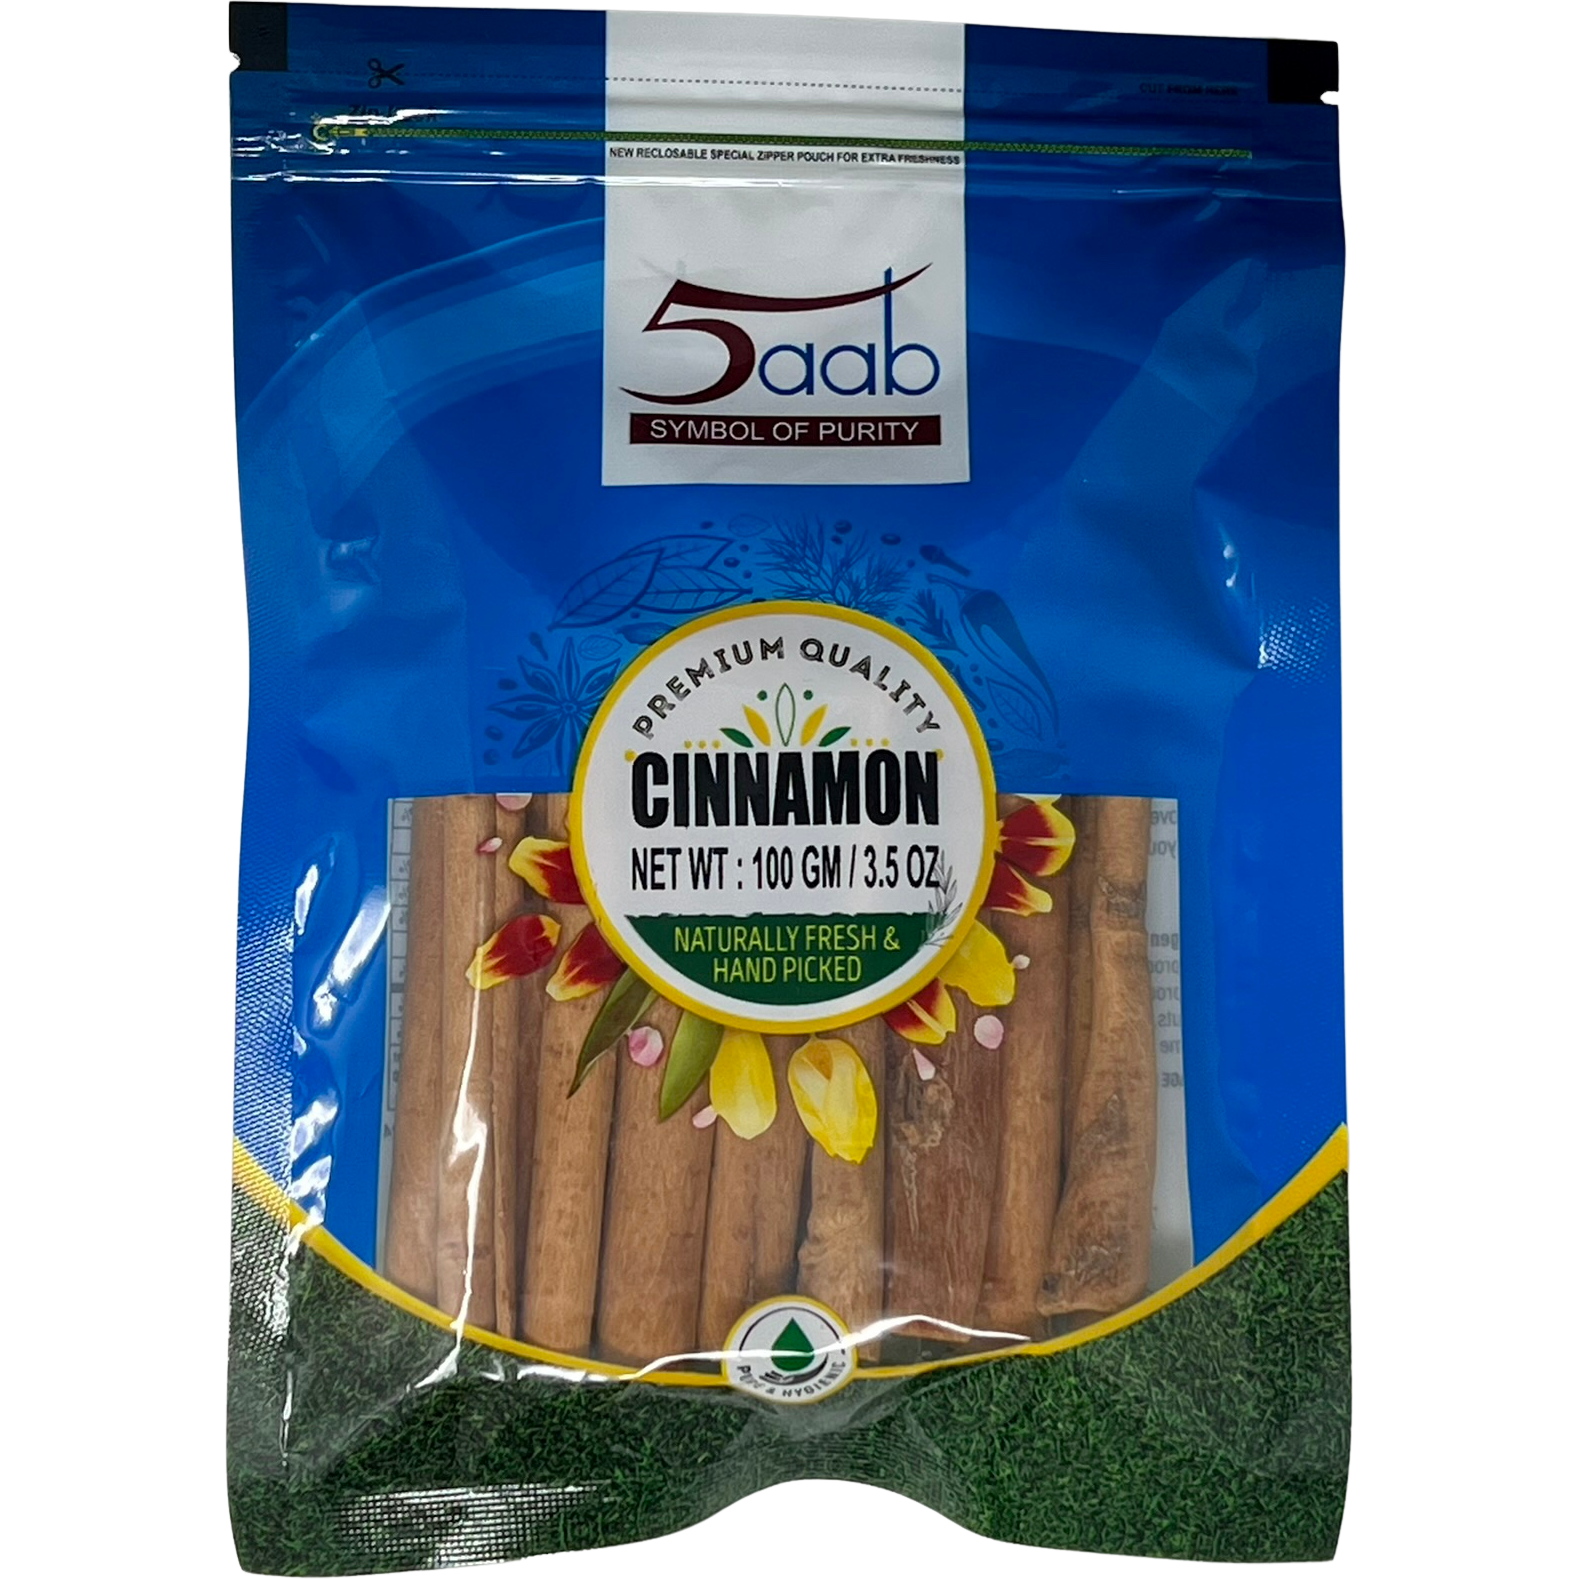 Case of 12 - 5aab Cinnamon - 100 Gm (3.5 Oz)